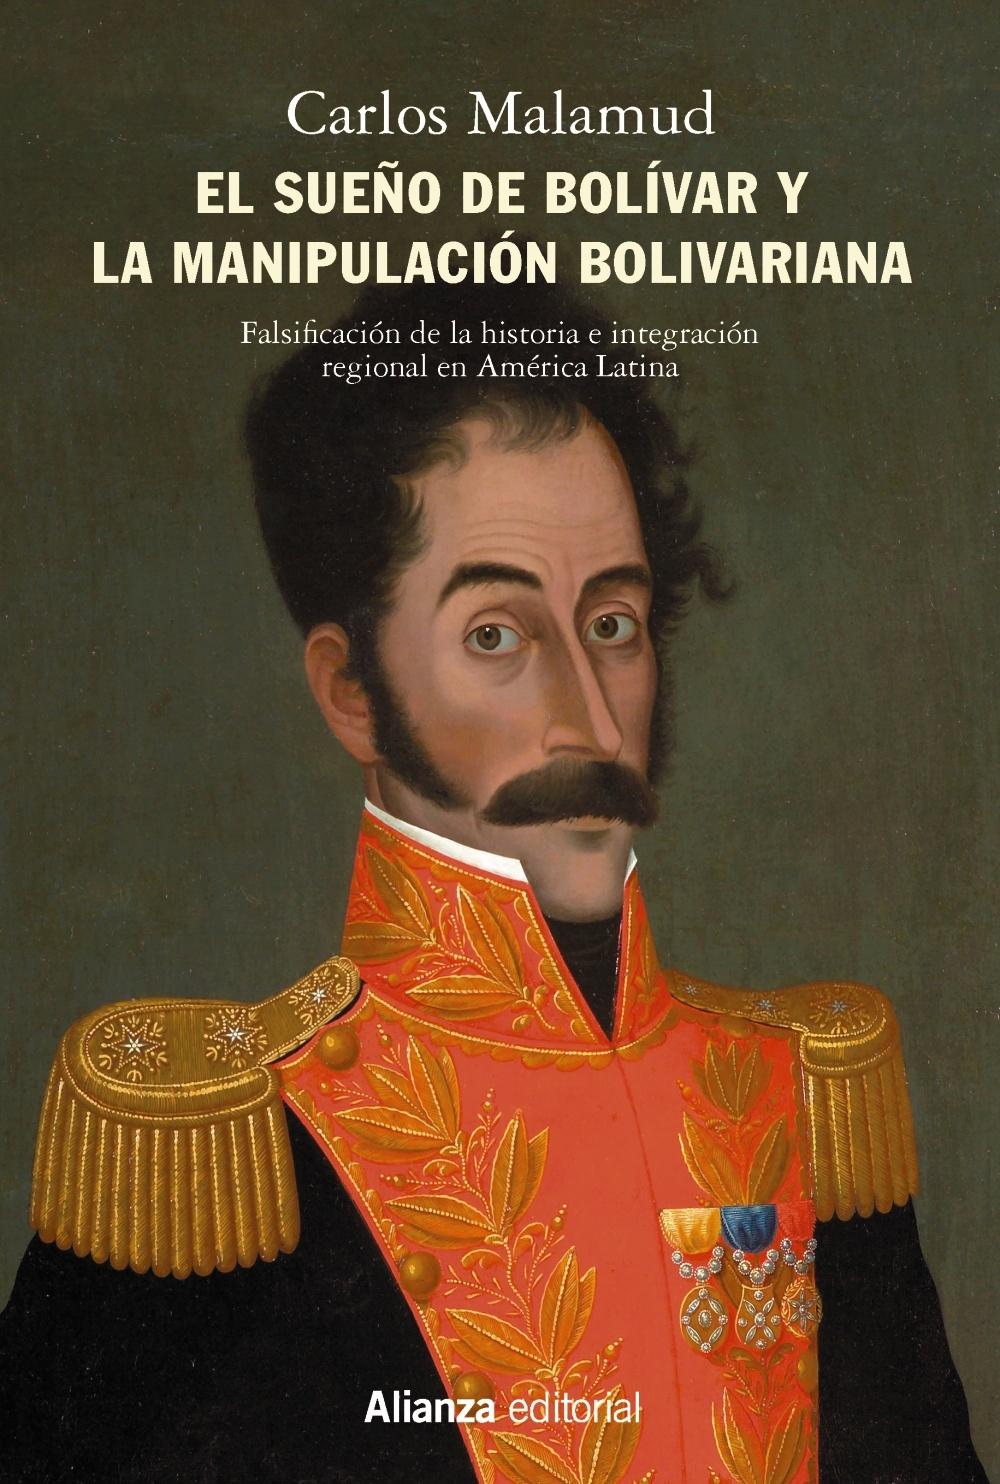 El sueño de Bolívar y la manipulación bolivariana "Falsificación de la historia e integración regional en América Latina"